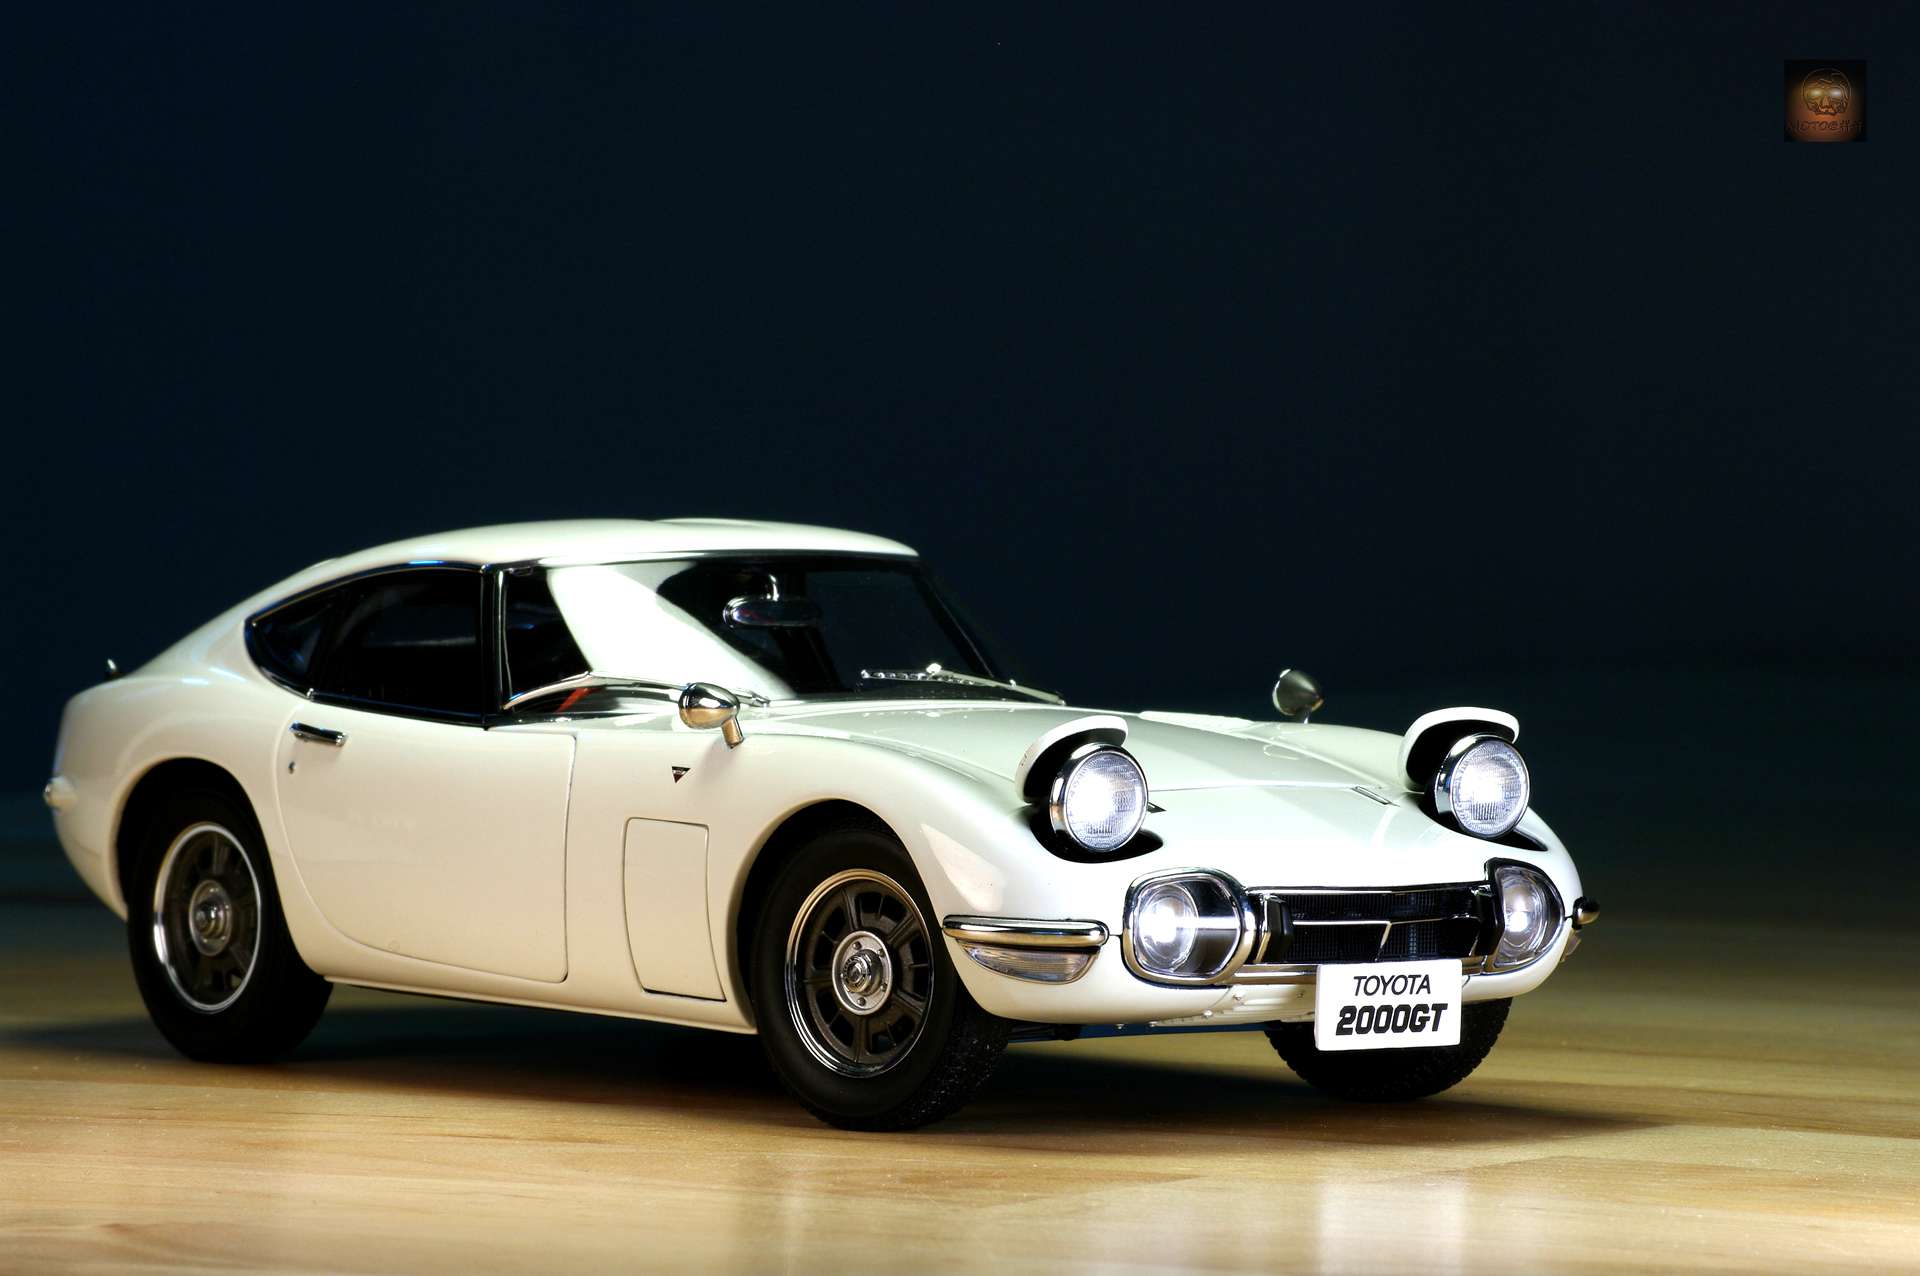 AUTOART（奥图亚）出品1:18比例丰田汽车模型，1967年丰田2000GT